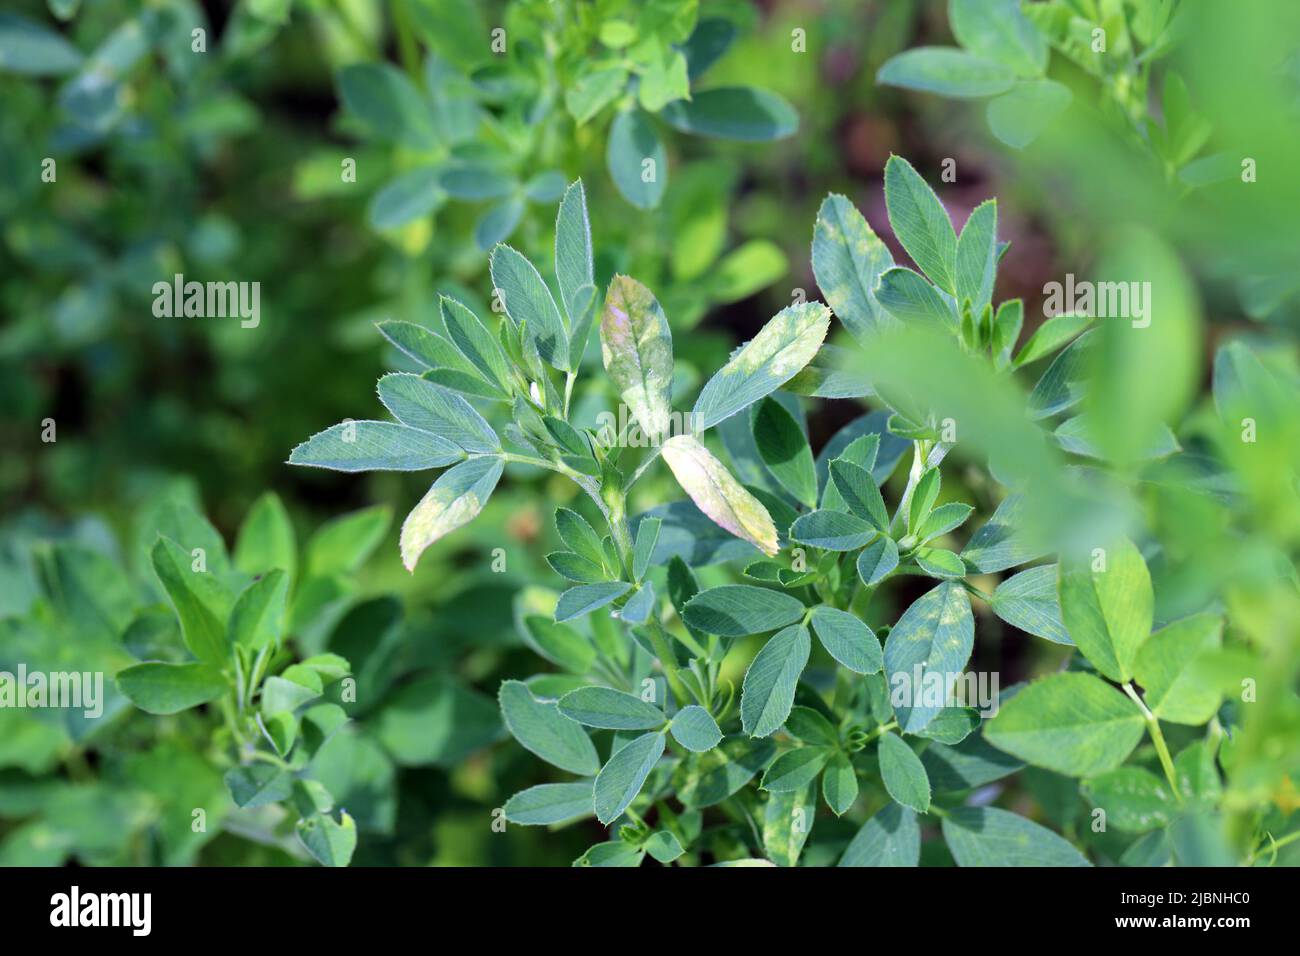 Alfalfa (Medicago sativa) Krankheit, Vergilbung der Blätter auf der Ernte. Stockfoto